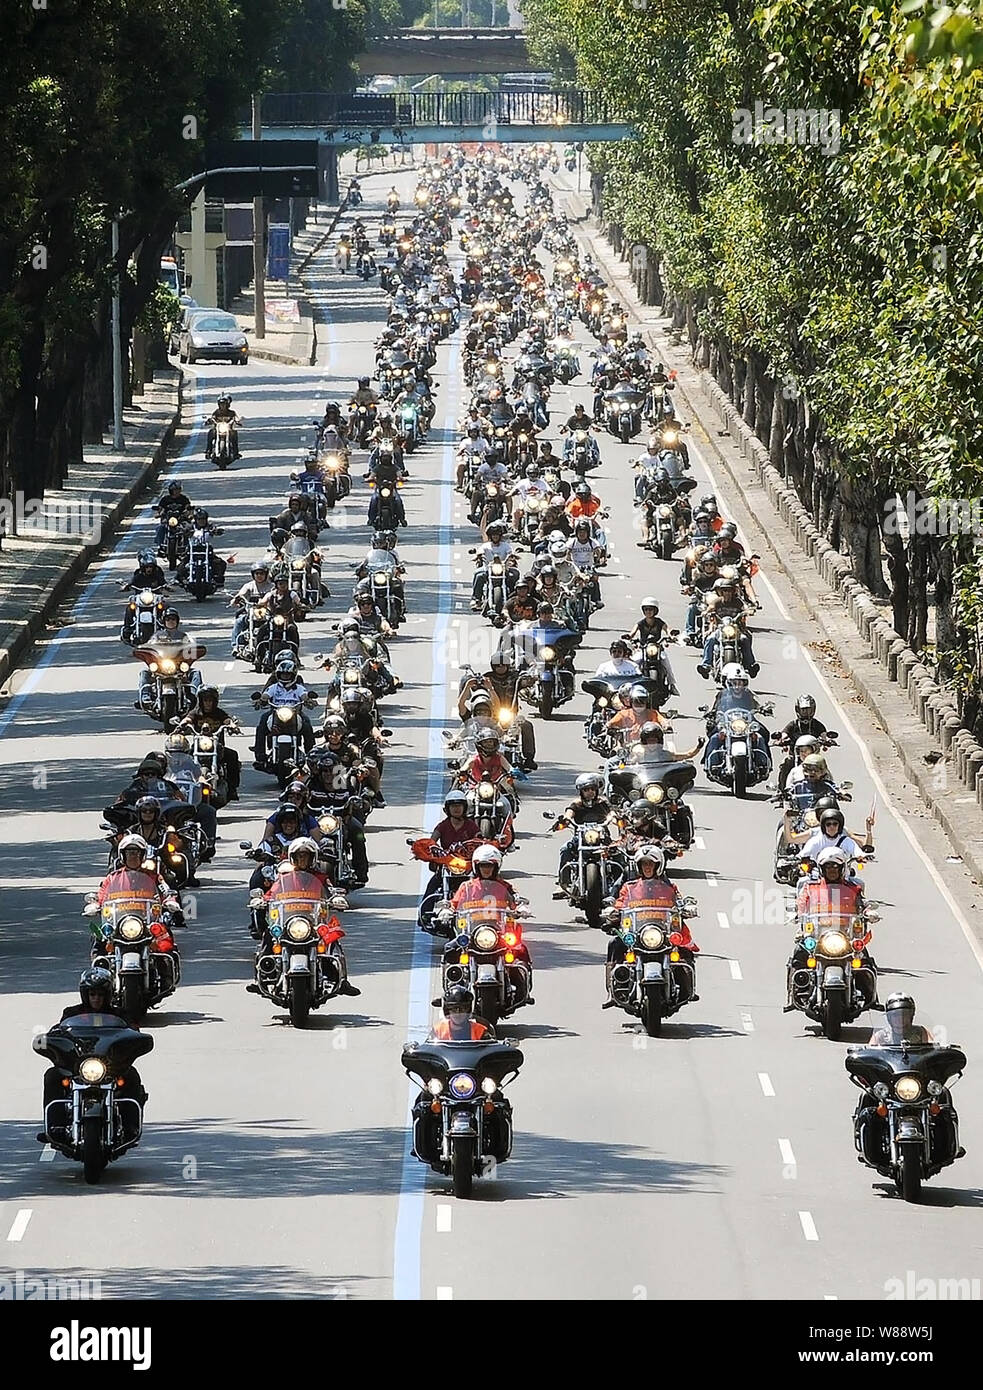 Rio de Janeiro, 11 dicembre 2009. I motociclisti con le loro Harley Davidson Moto ruotare attraverso le strade del centro di Rio de Janeiro, Brasile Foto Stock